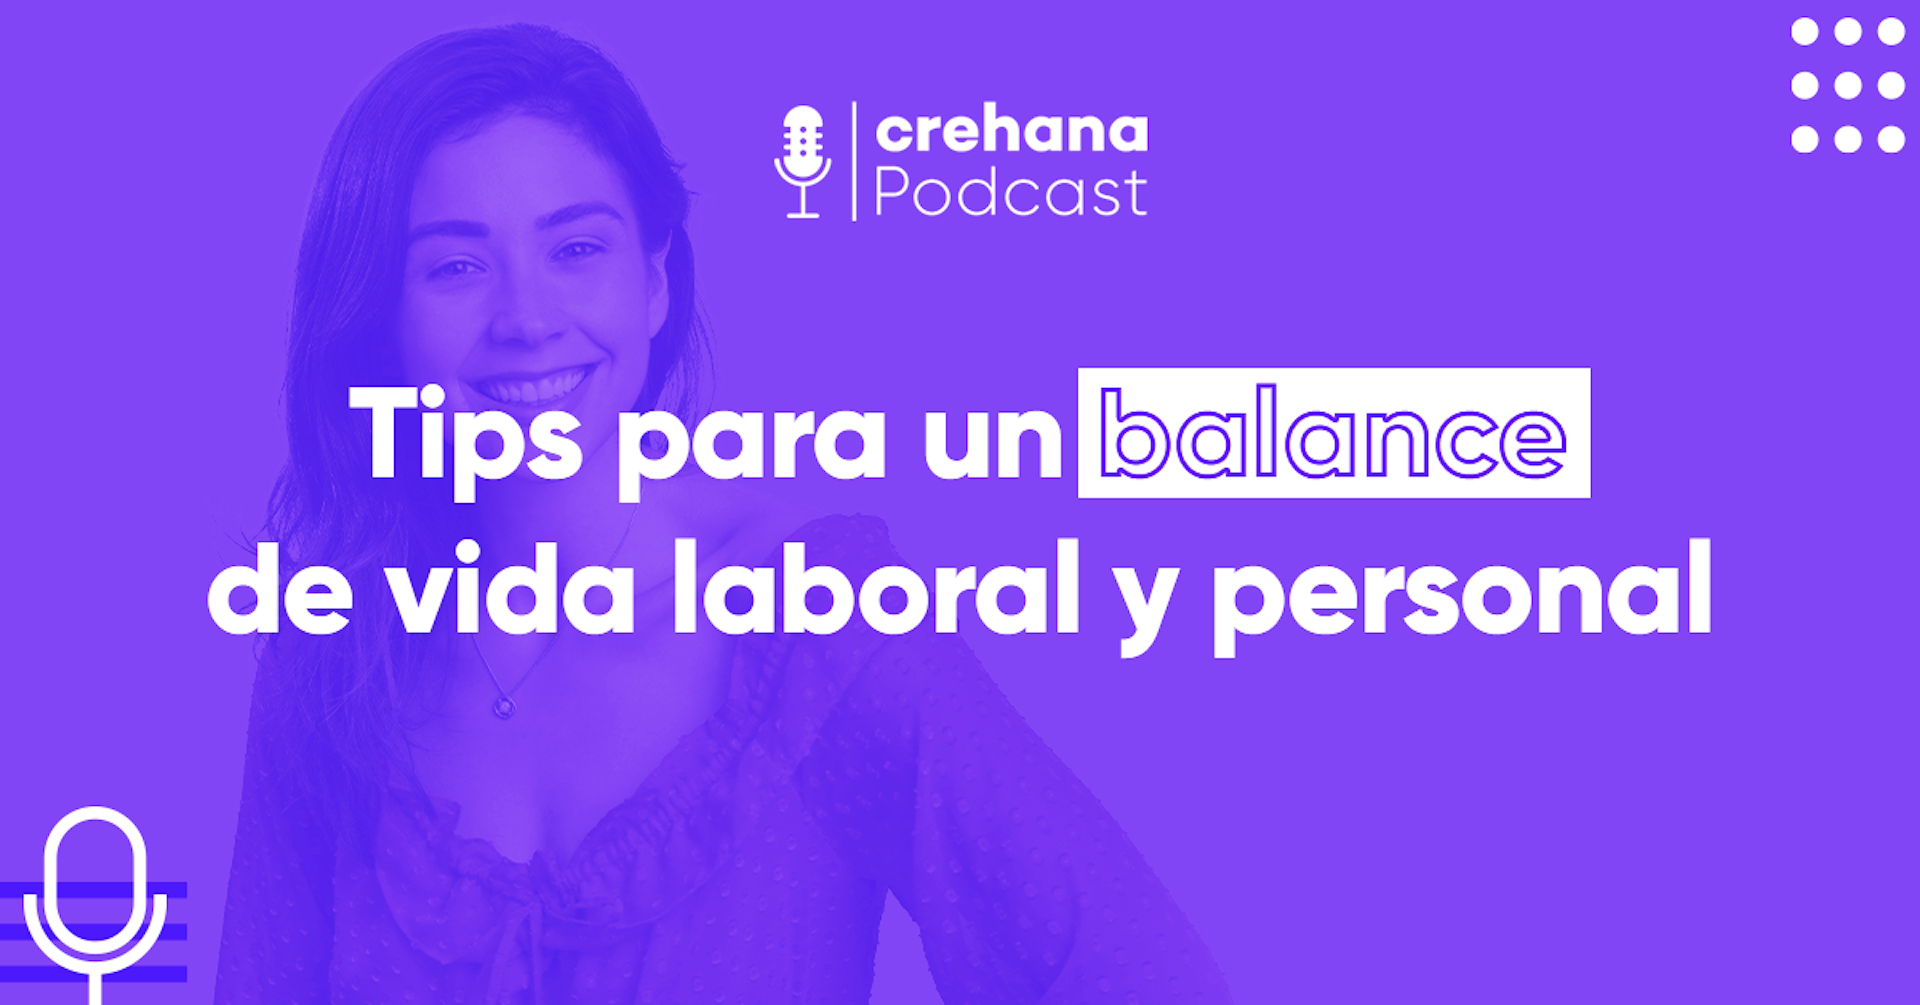 Crehana Podcast: Tips para un balance de vida laboral y personal